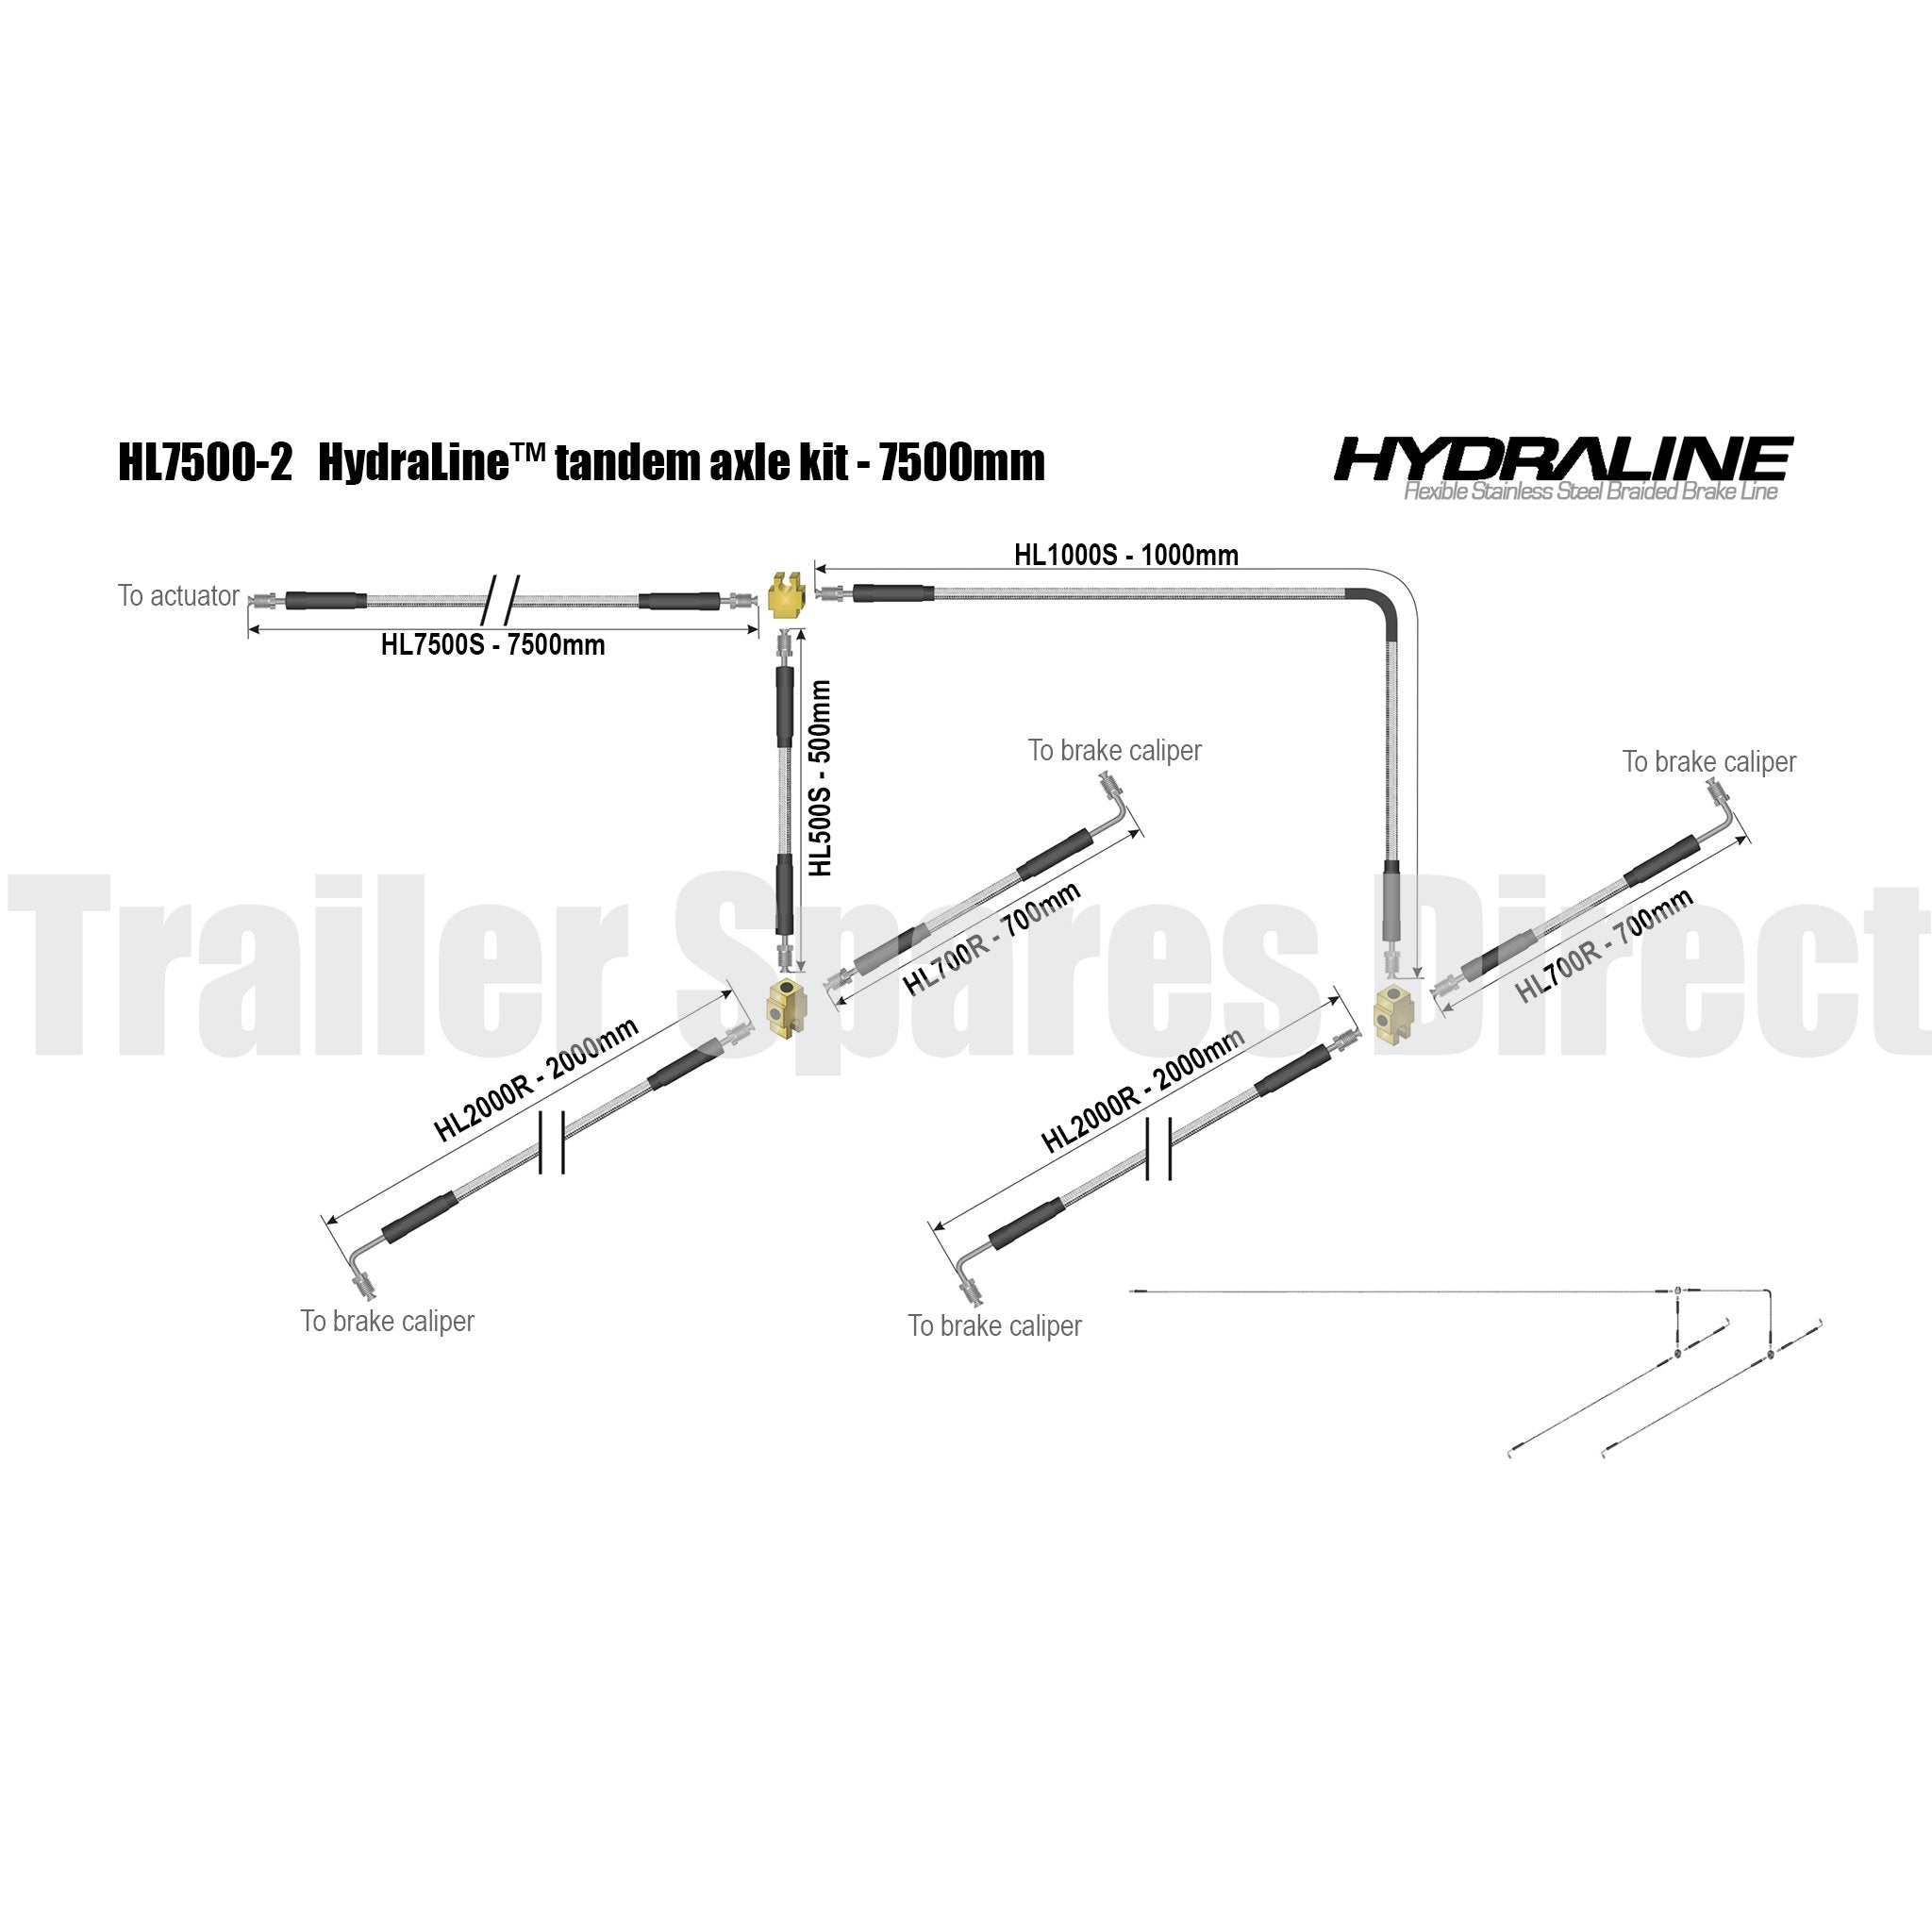 Hydraline kit 7500mm tandem axle diagram